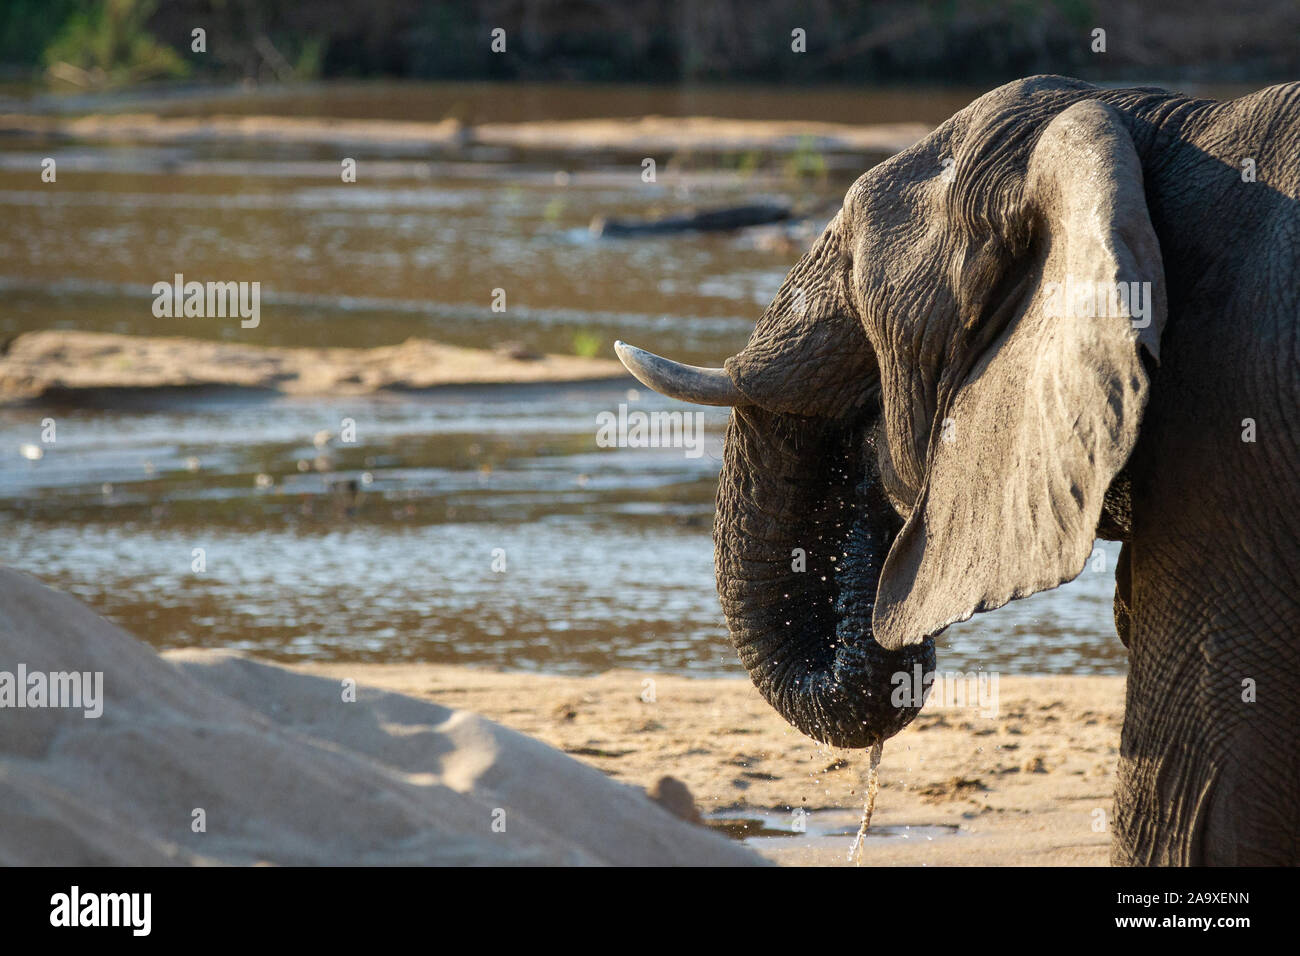 Un éléphant, Loxodonta africana, des ascenseurs de son tronc à sa bouche pour boire Banque D'Images